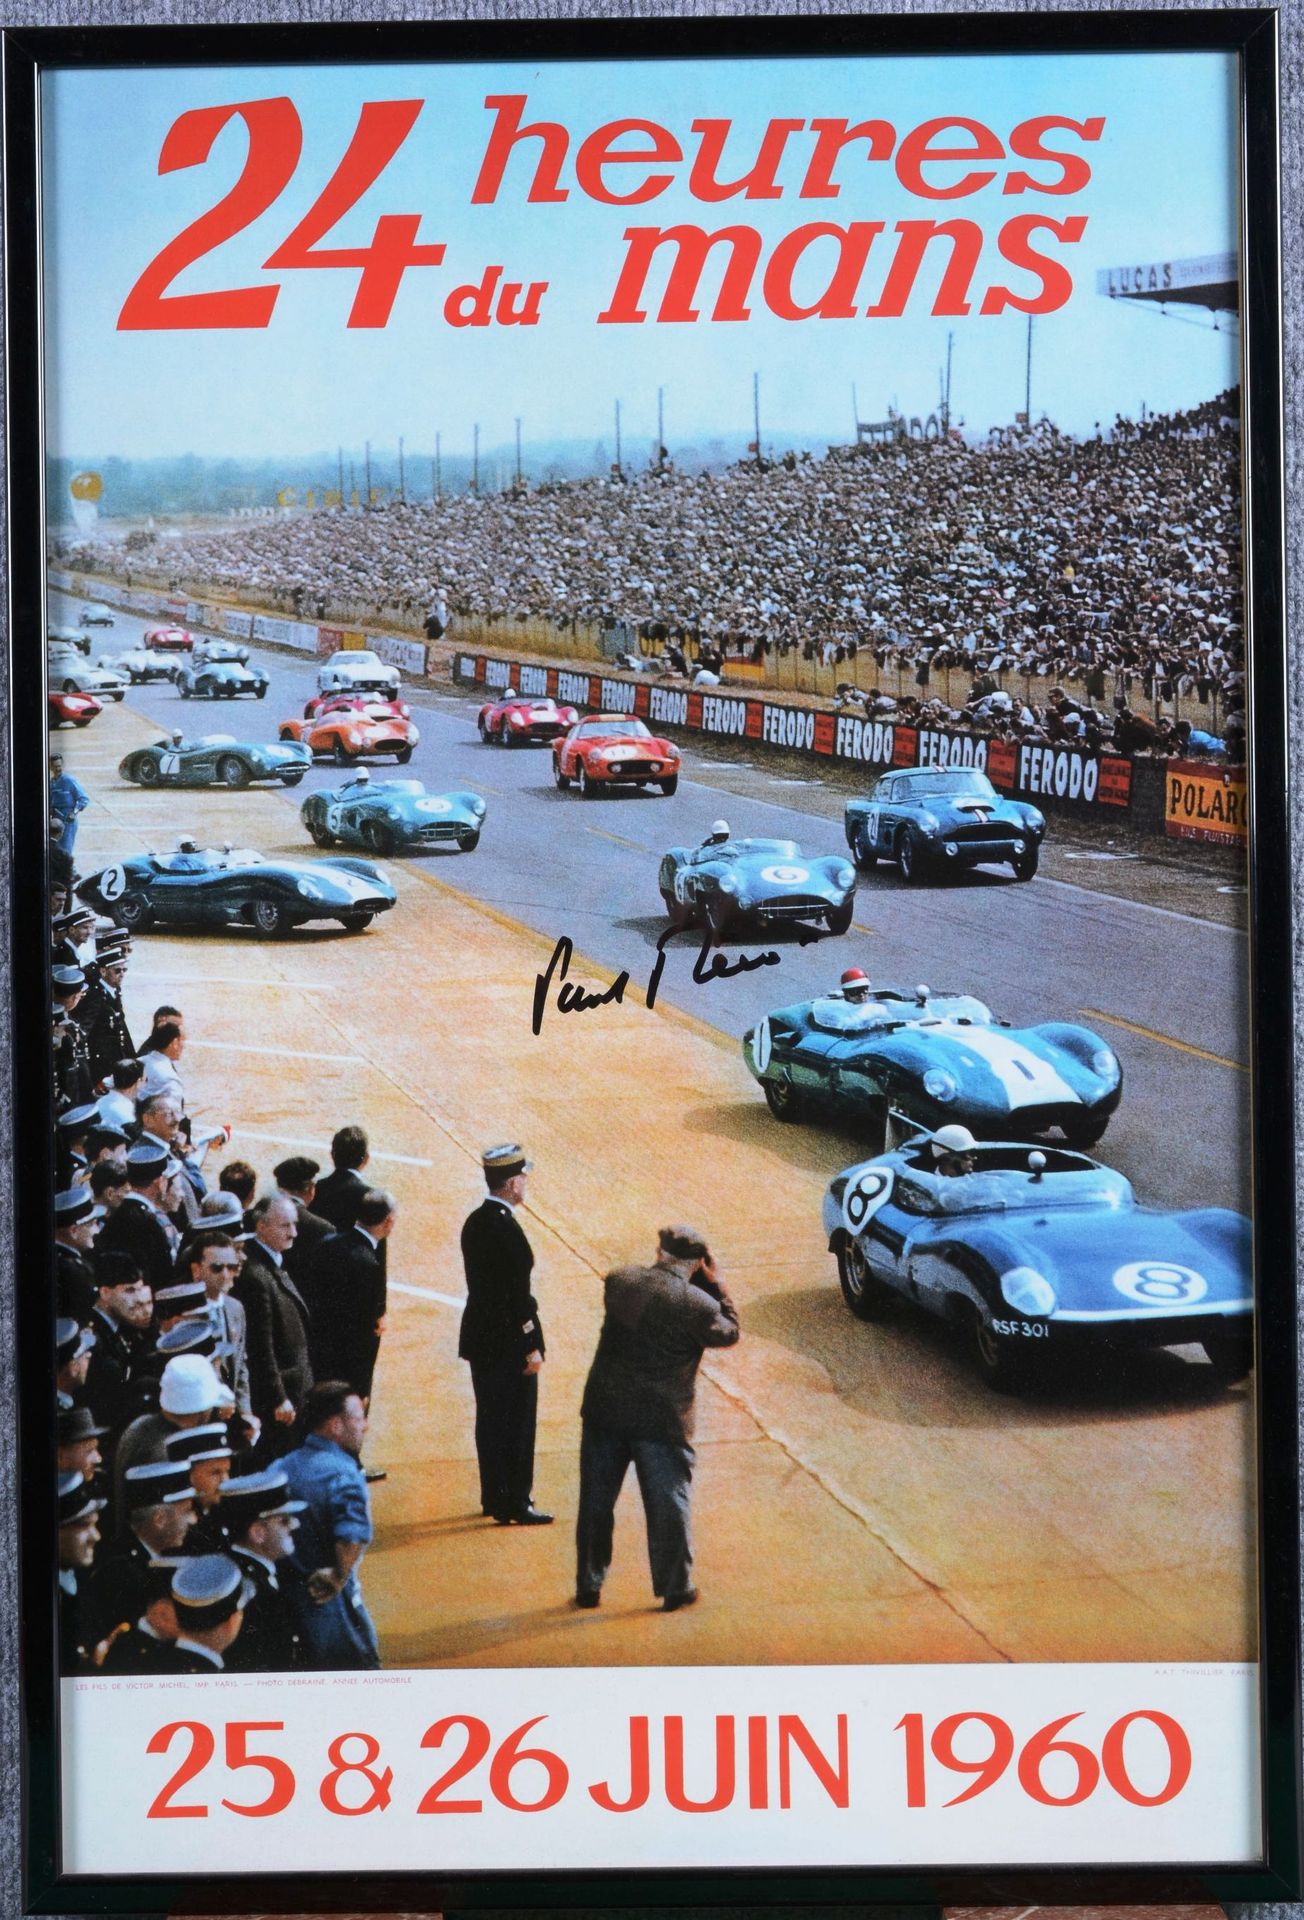 Paul FRERE Paul FRERE

Cartel (reedición) de las 24 horas de Le Mans de 1960 que&hellip;